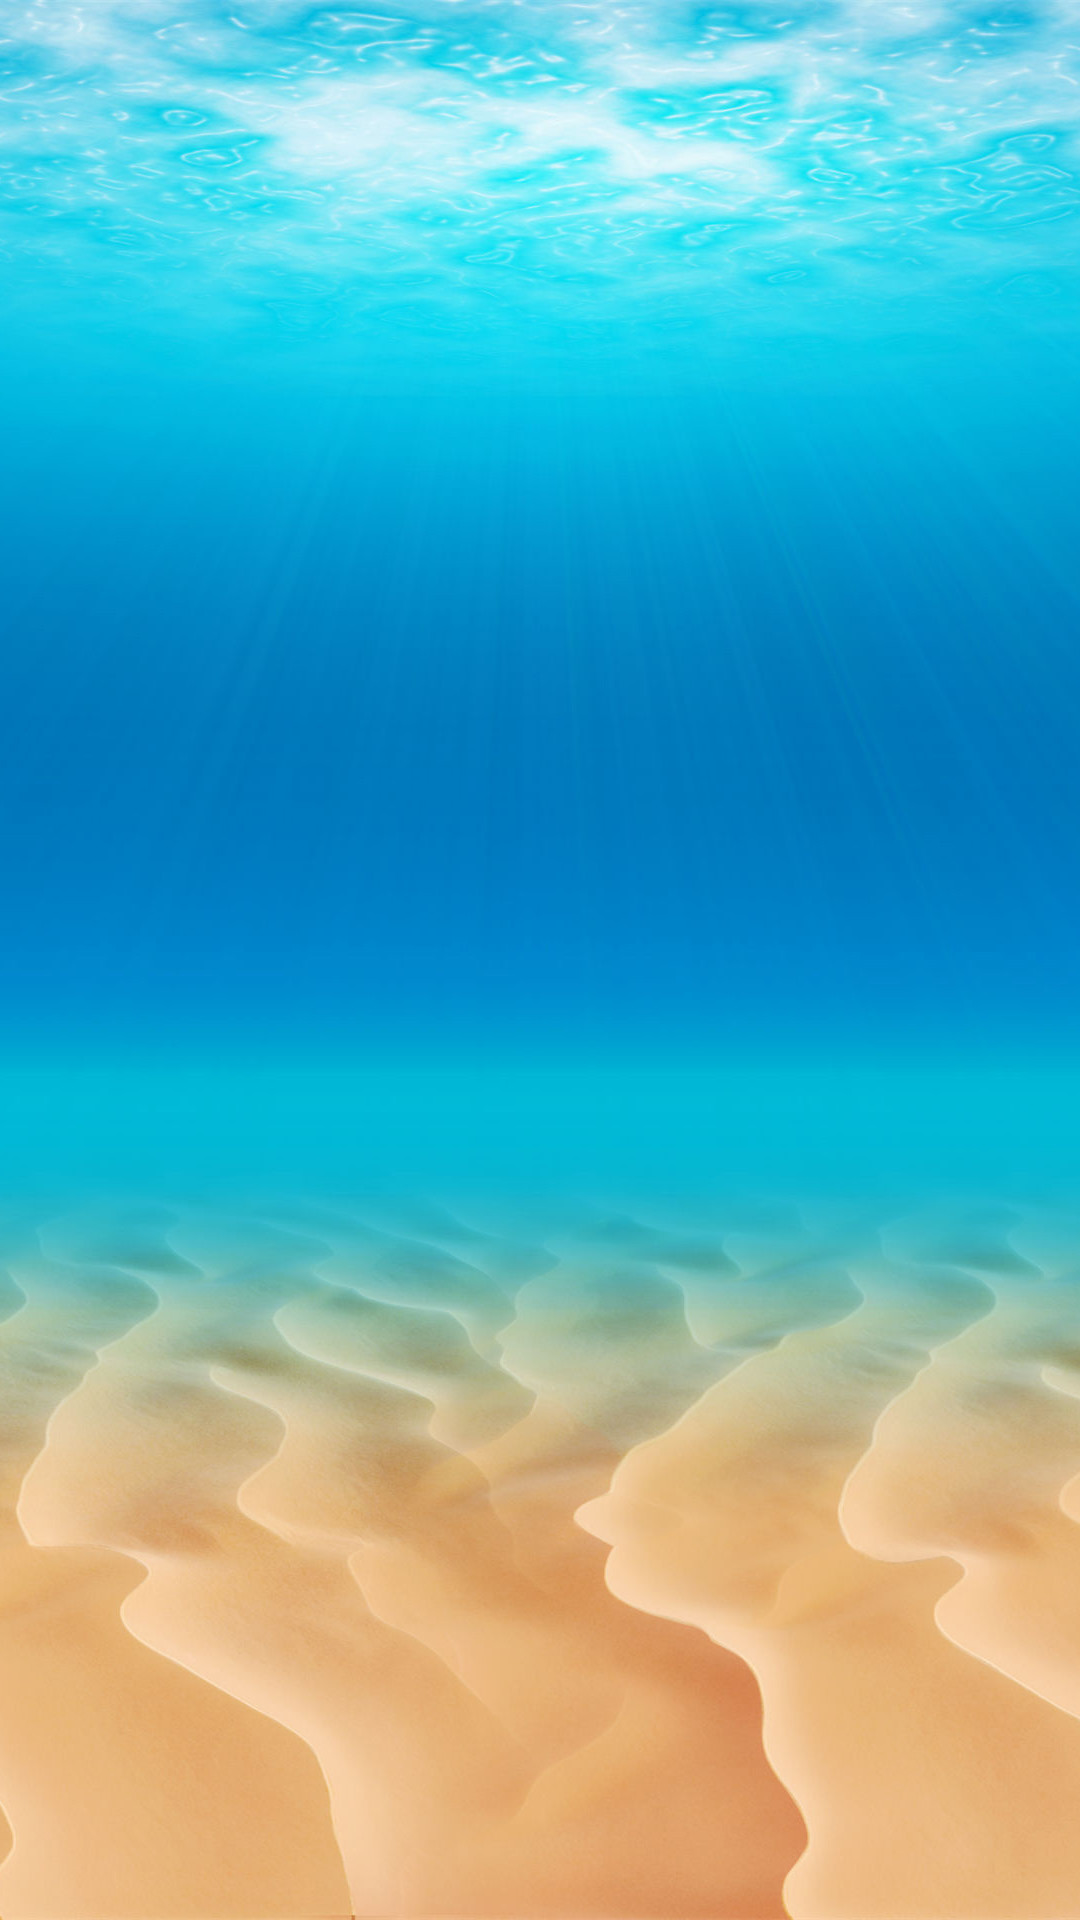 Download the Android Ocean Floor wallpaper